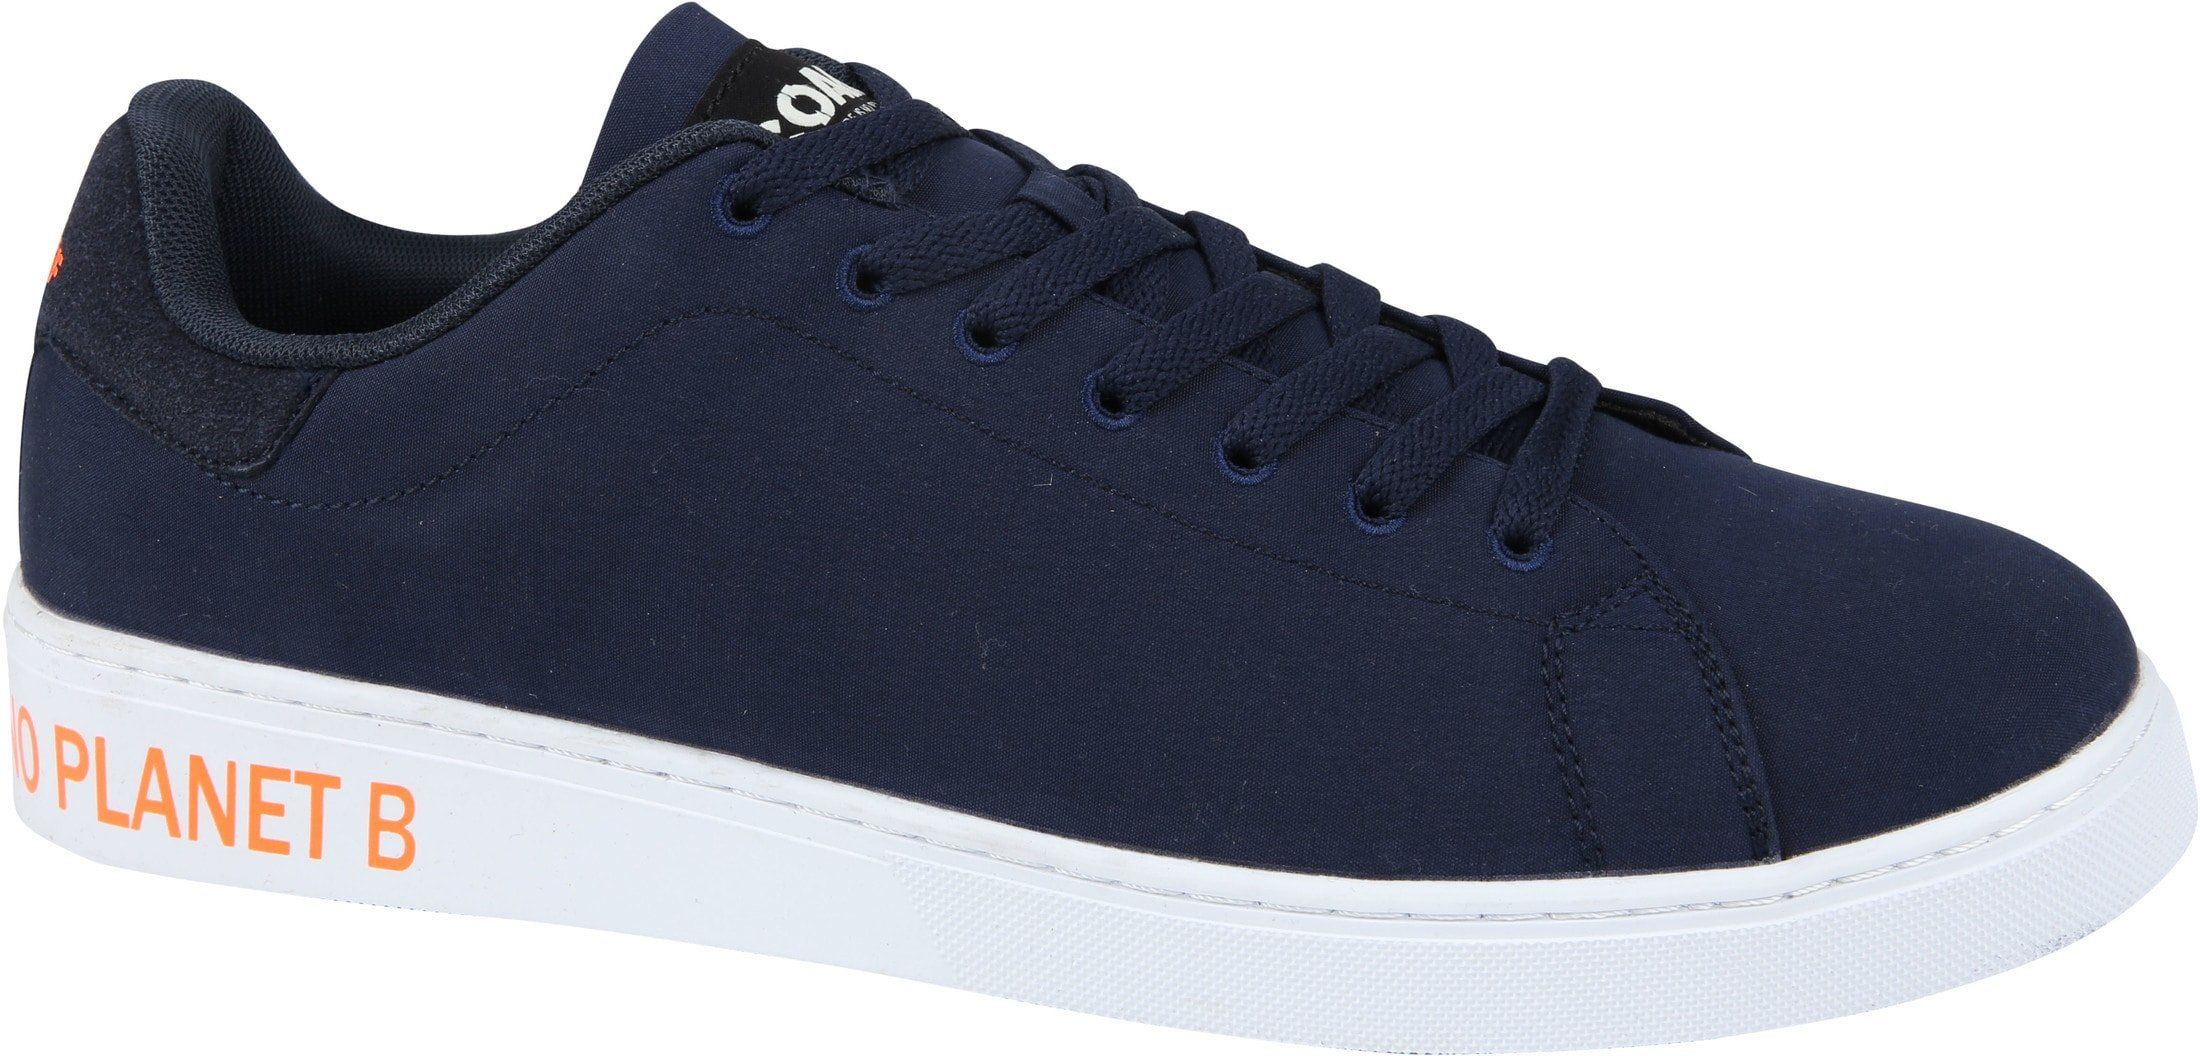 Ecoalf Sneaker Sanford Dark Dark Blue Blue size 8.5